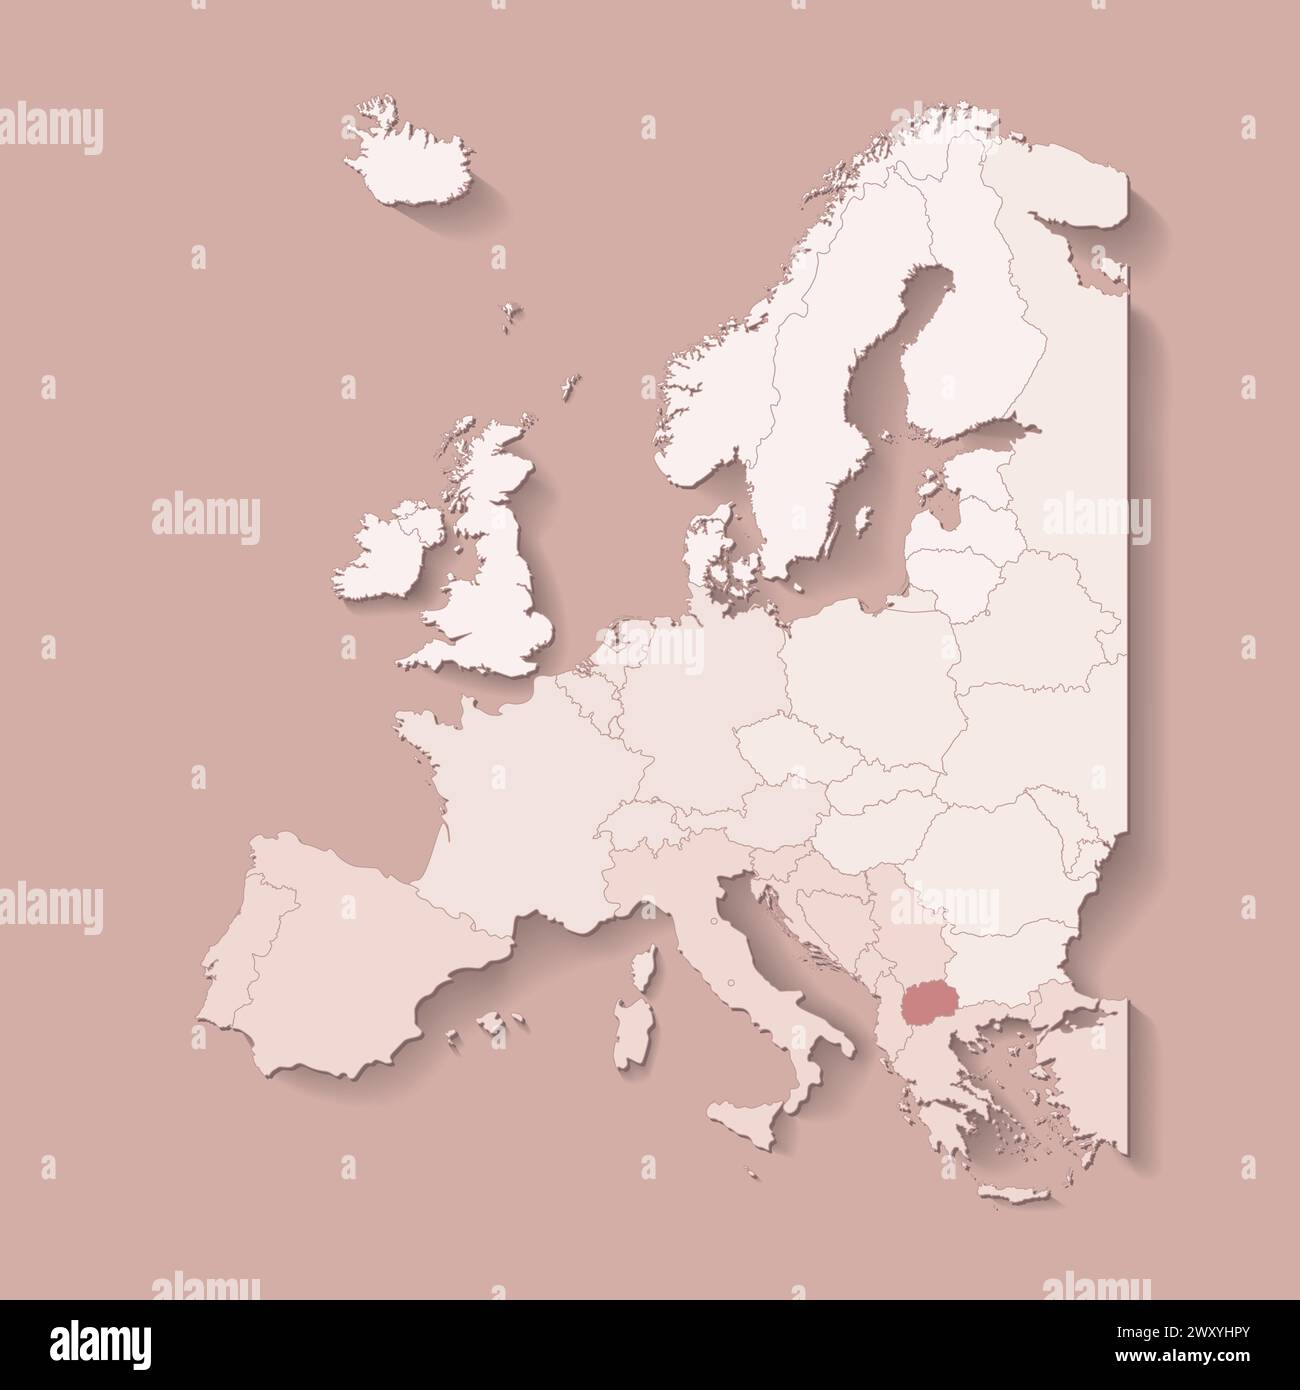 Illustrazione vettoriale con terra europea con confini di stati e paese contrassegnato Macedonia del Nord. Mappa politica in colori marroni con occidentale, sud AN Illustrazione Vettoriale